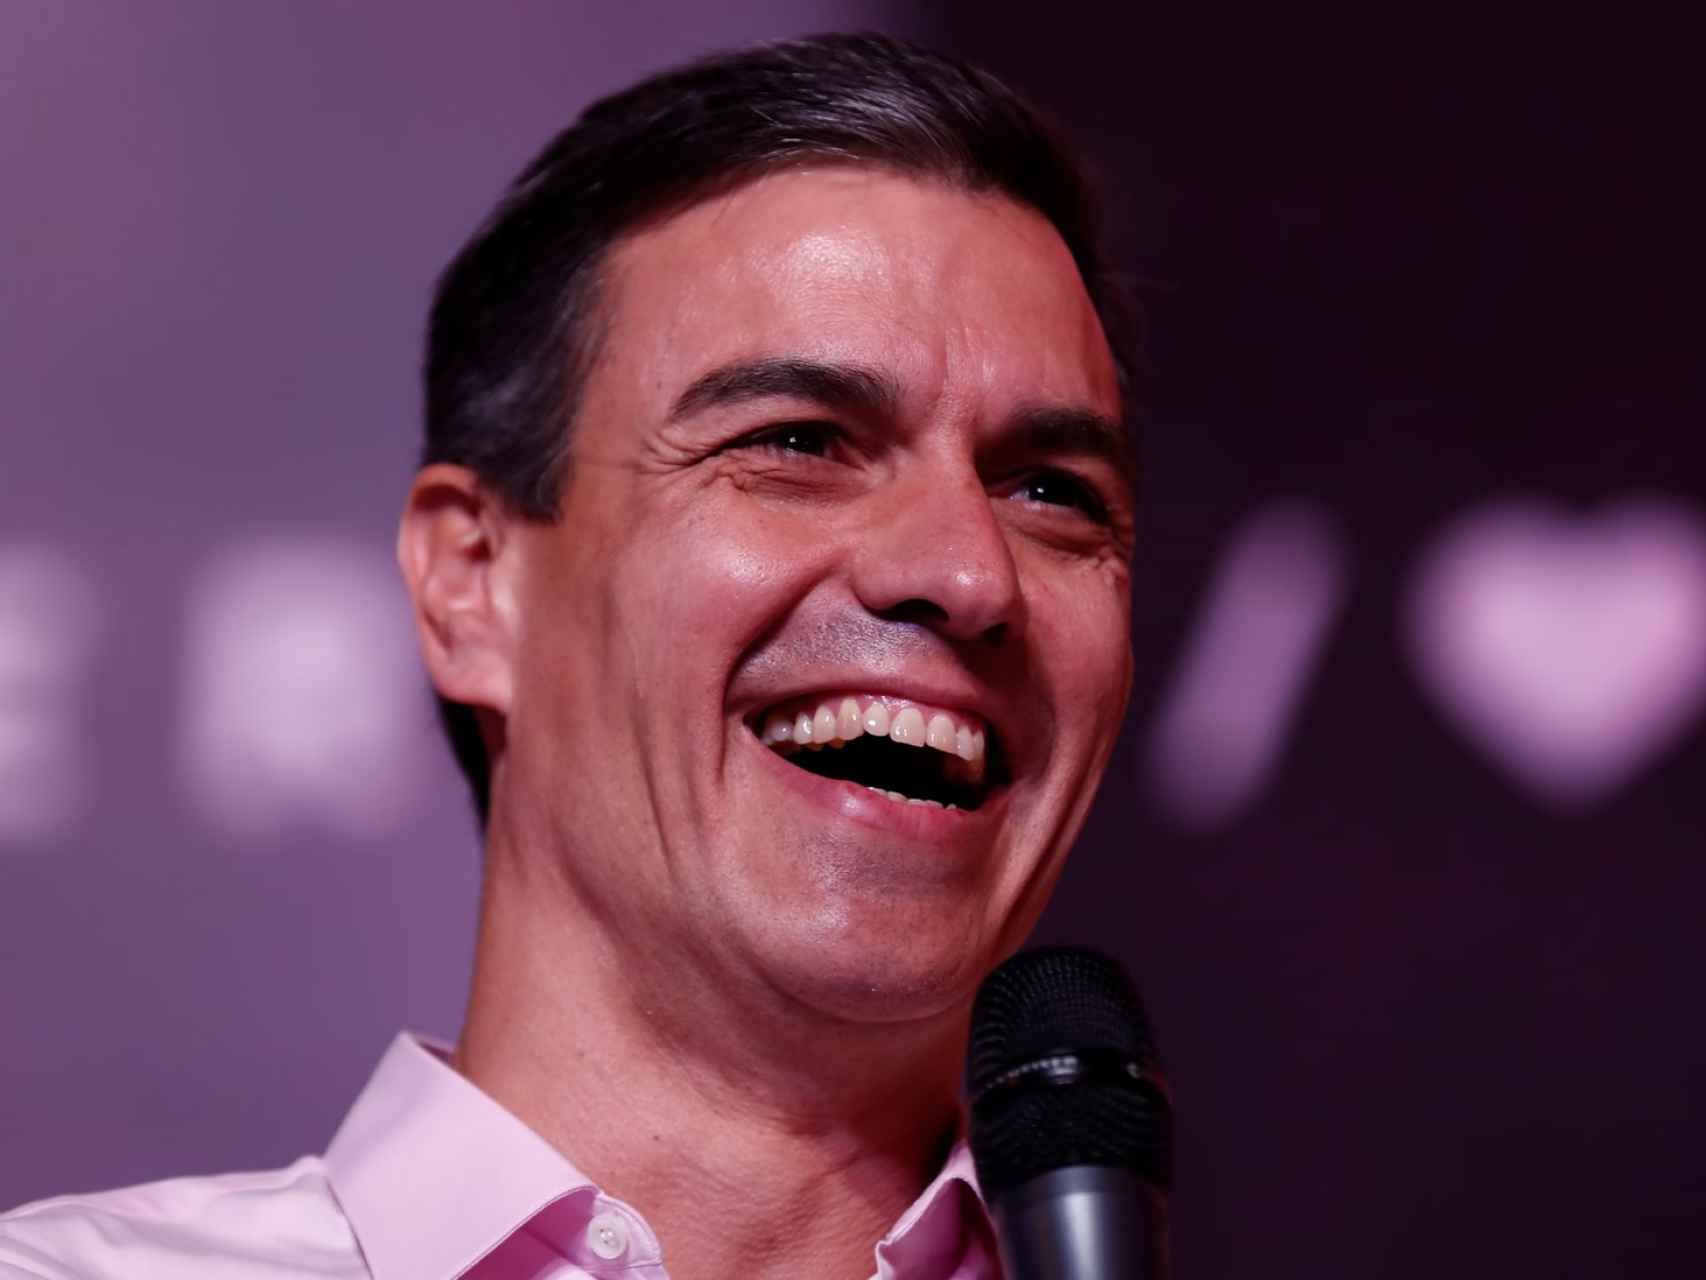 Pedro Sánchez, particularmente alegre tras su última victoria electoral.